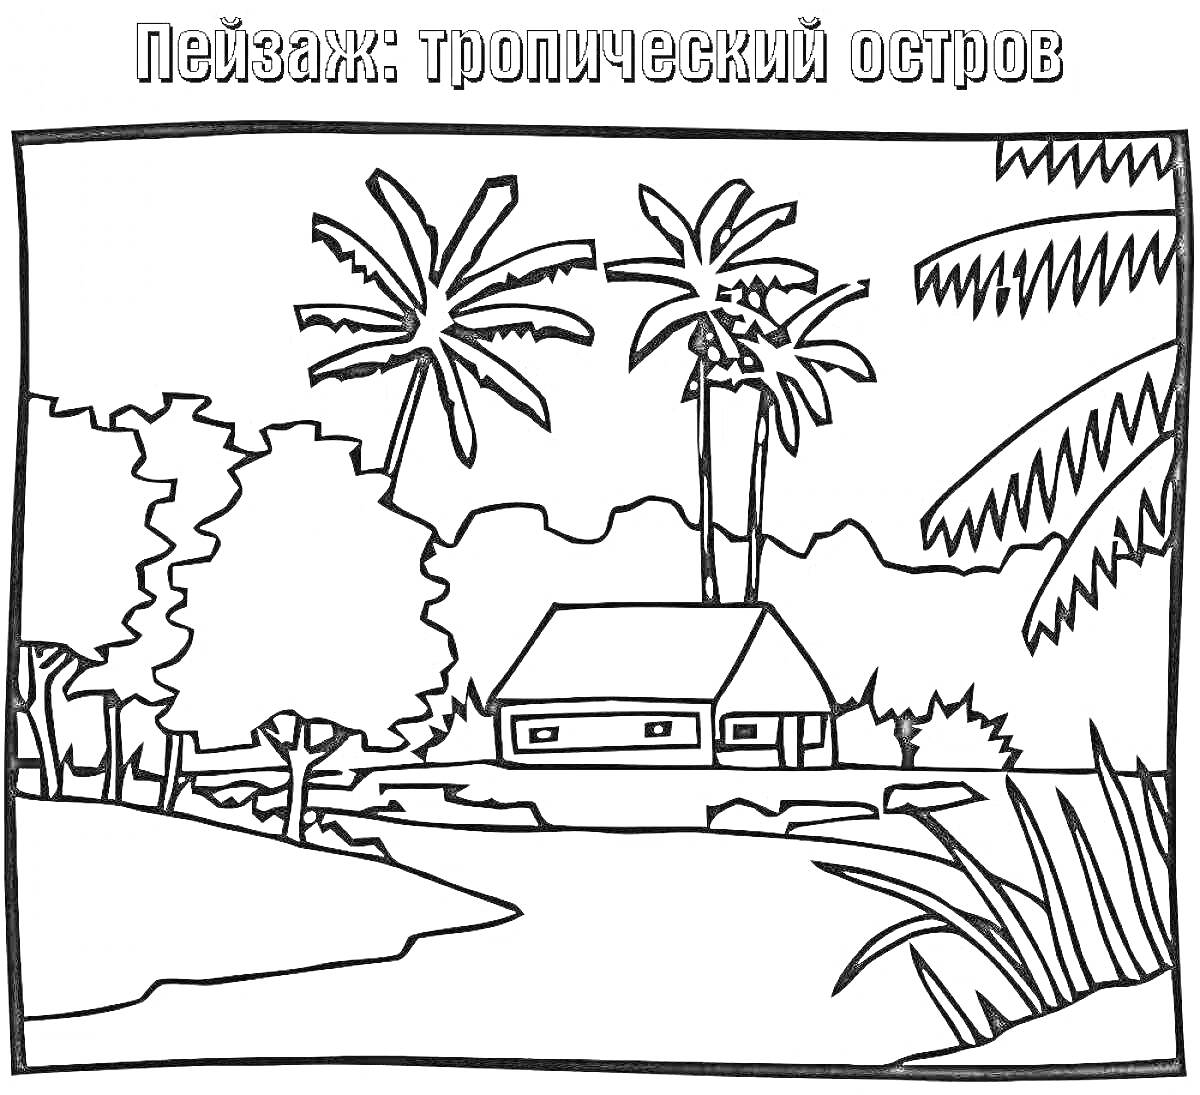 Раскраска Тропический остров с деревянным домом, пальмами, деревьями, камнями и растительностью на берегу